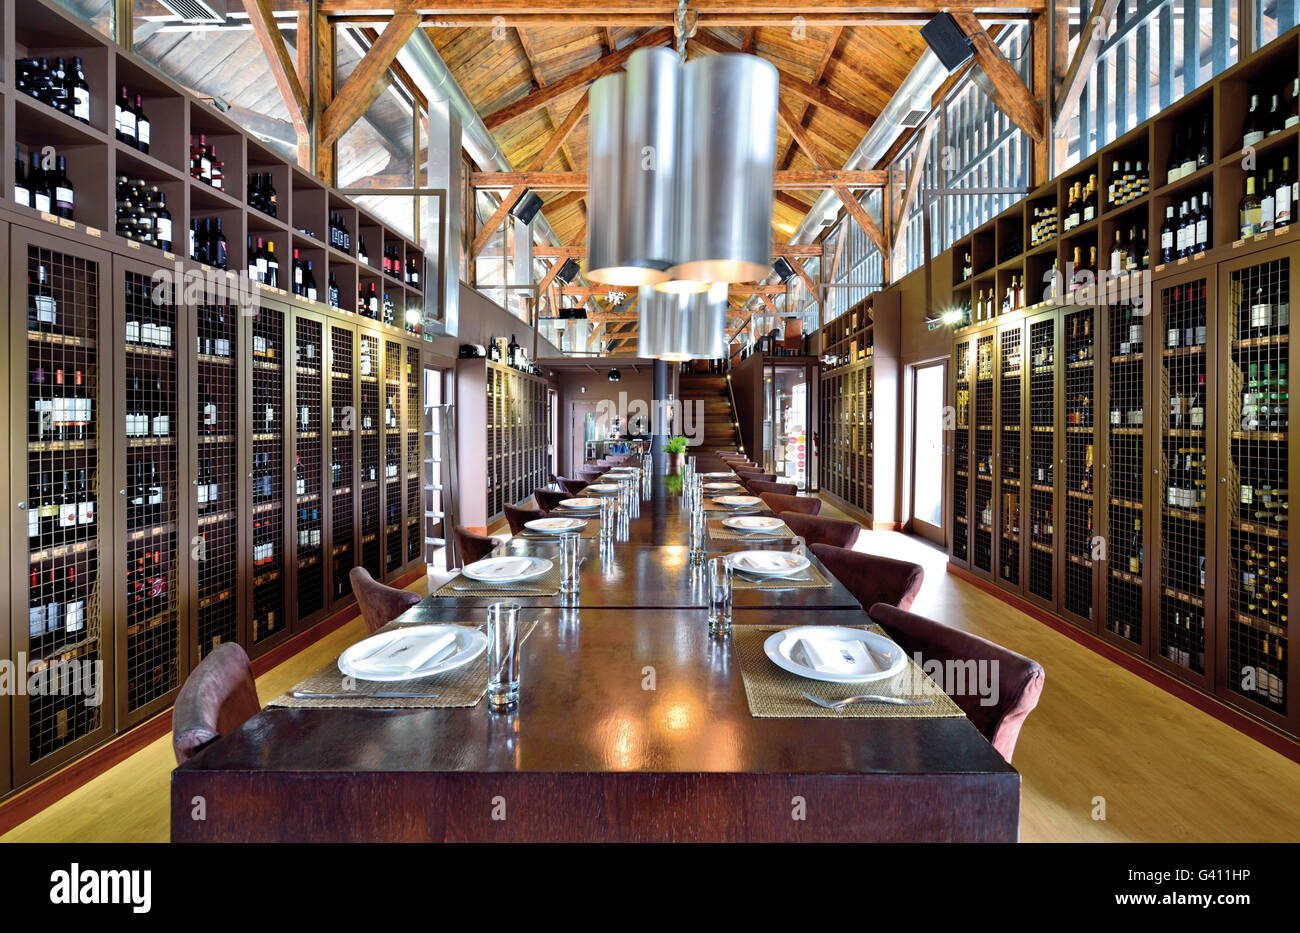 Portugal: Interior of the Wine Bar and Gourmet Restaurant Castas e Pratos  in Peso da Régua Stock Photo - Alamy